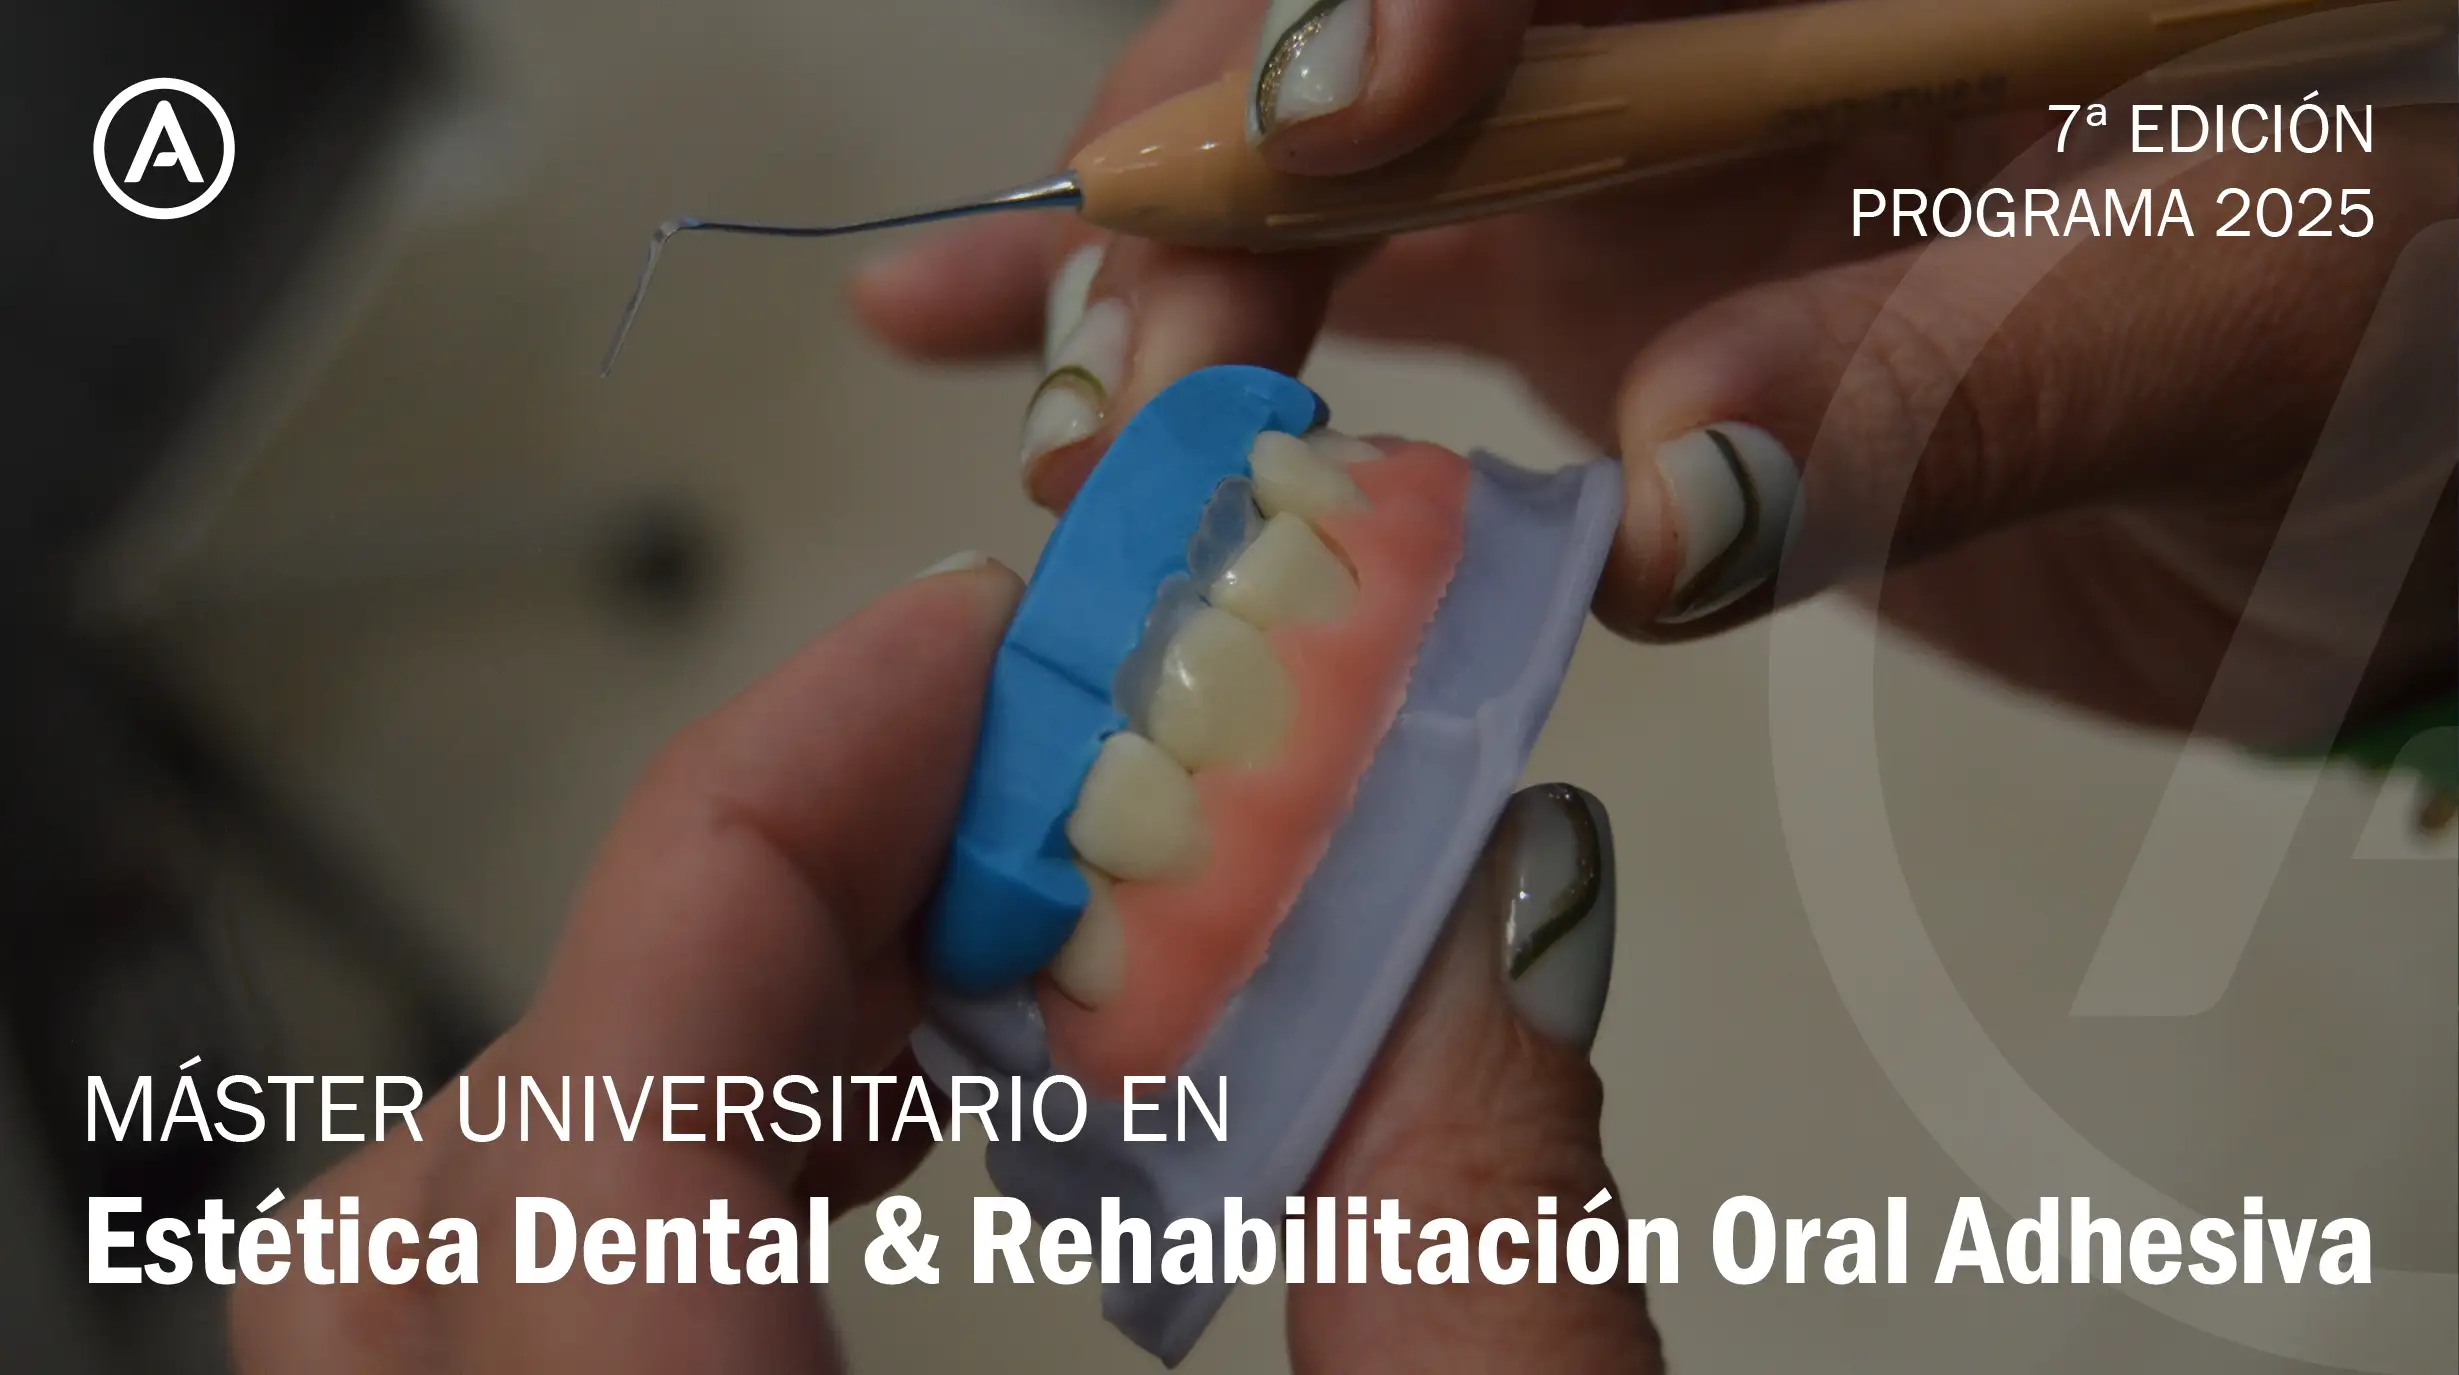 Máster Universitario en Estética Dental & Rehabilitación Oral Adhesiva 2025